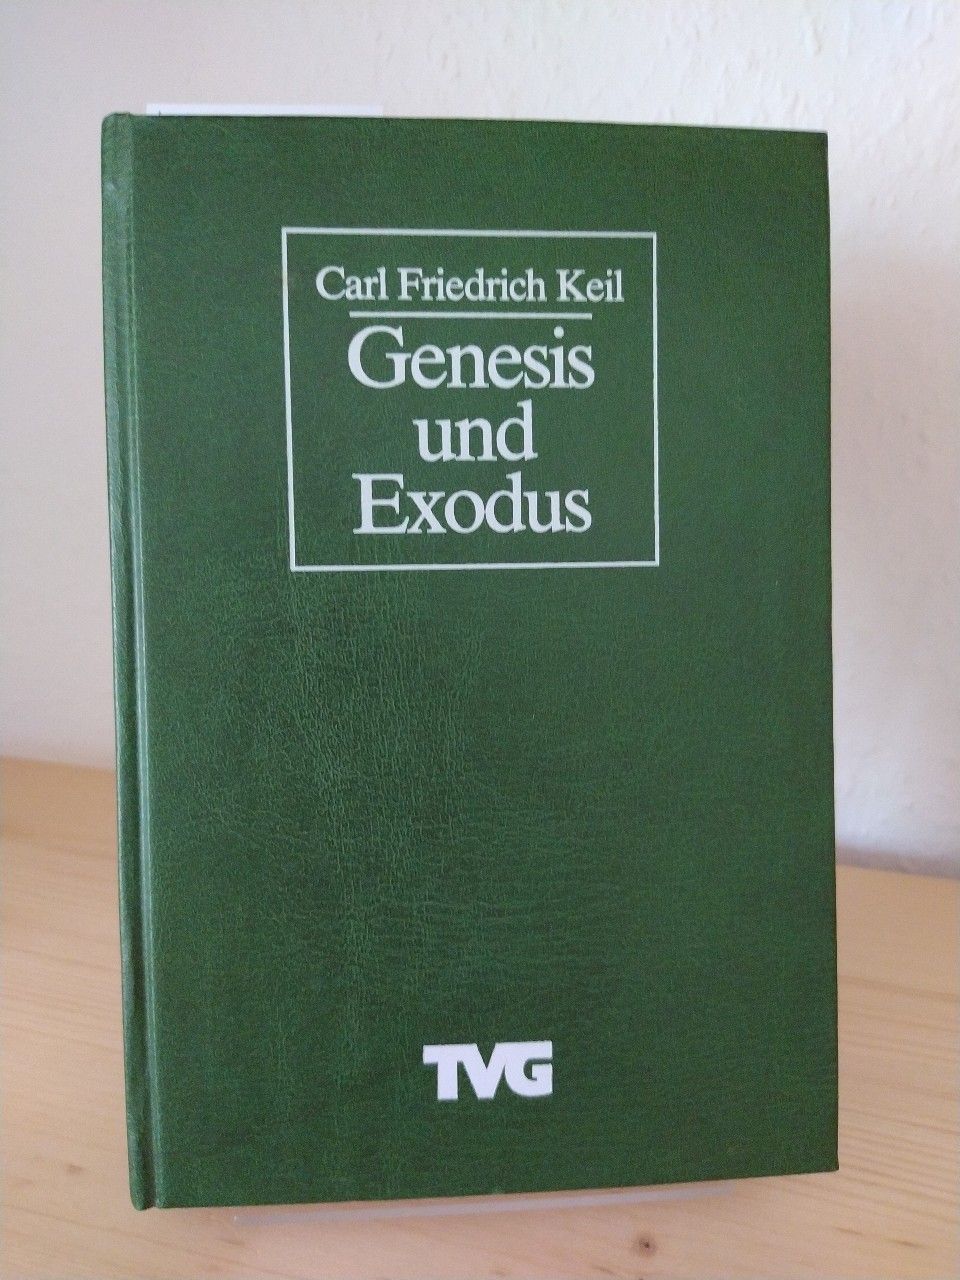 Genesis und Exodus. [Von Carl Friedrich Keil]. - Keil, Carl Friedrich